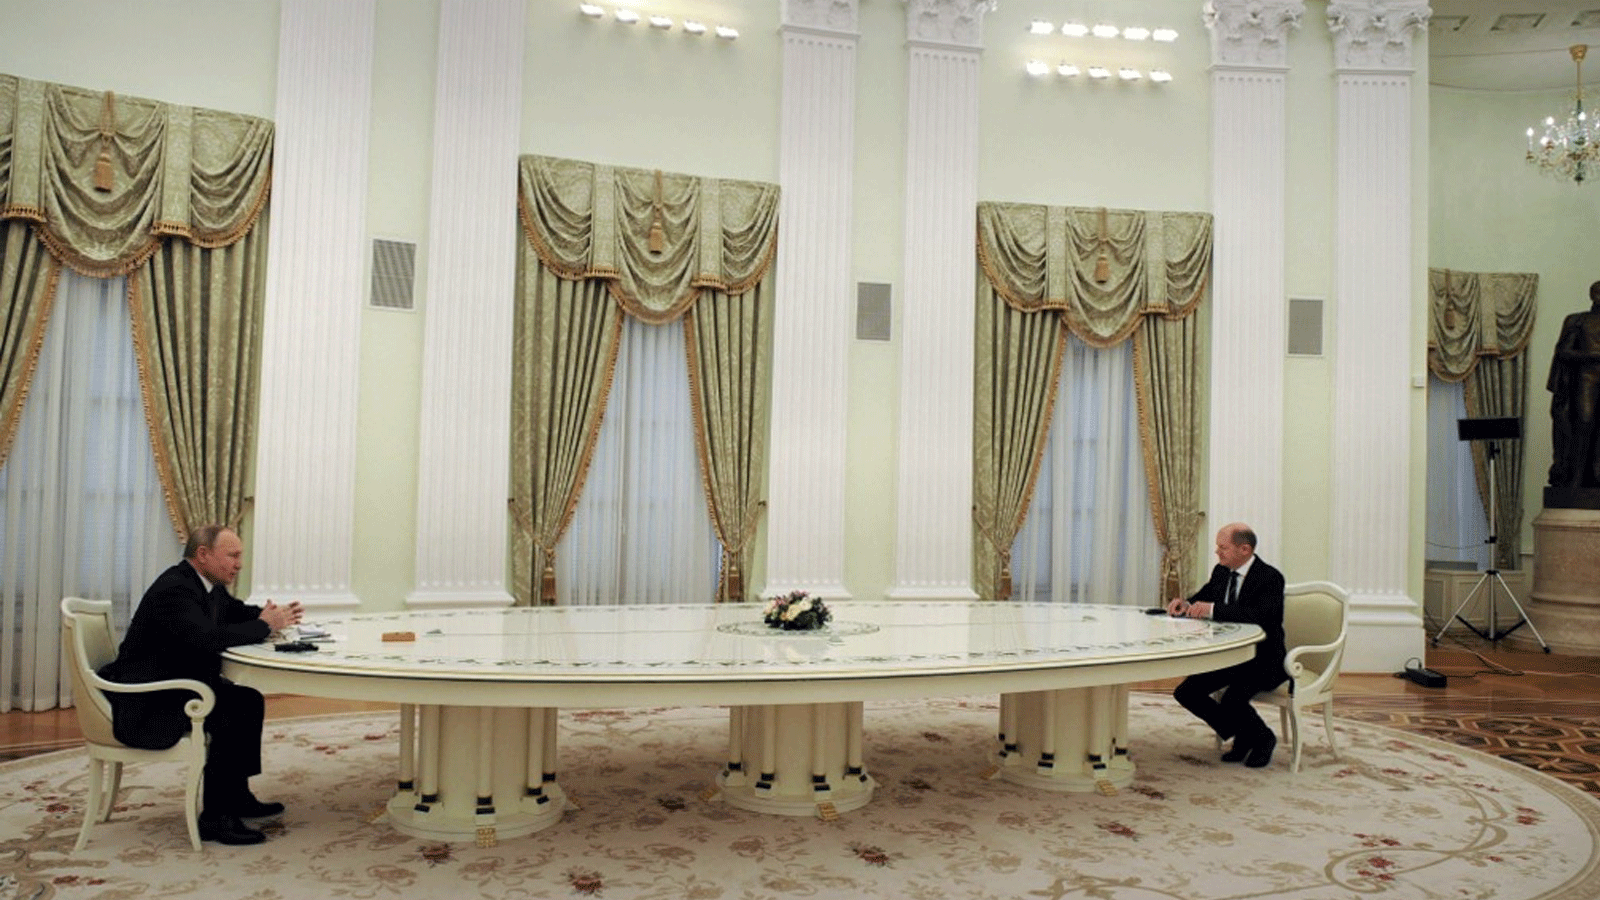 الرئيس الروسي فلاديمير بوتين مستقبلاً المستشار الألماني أولاف شولتس في الكرملين(أرشيفية)